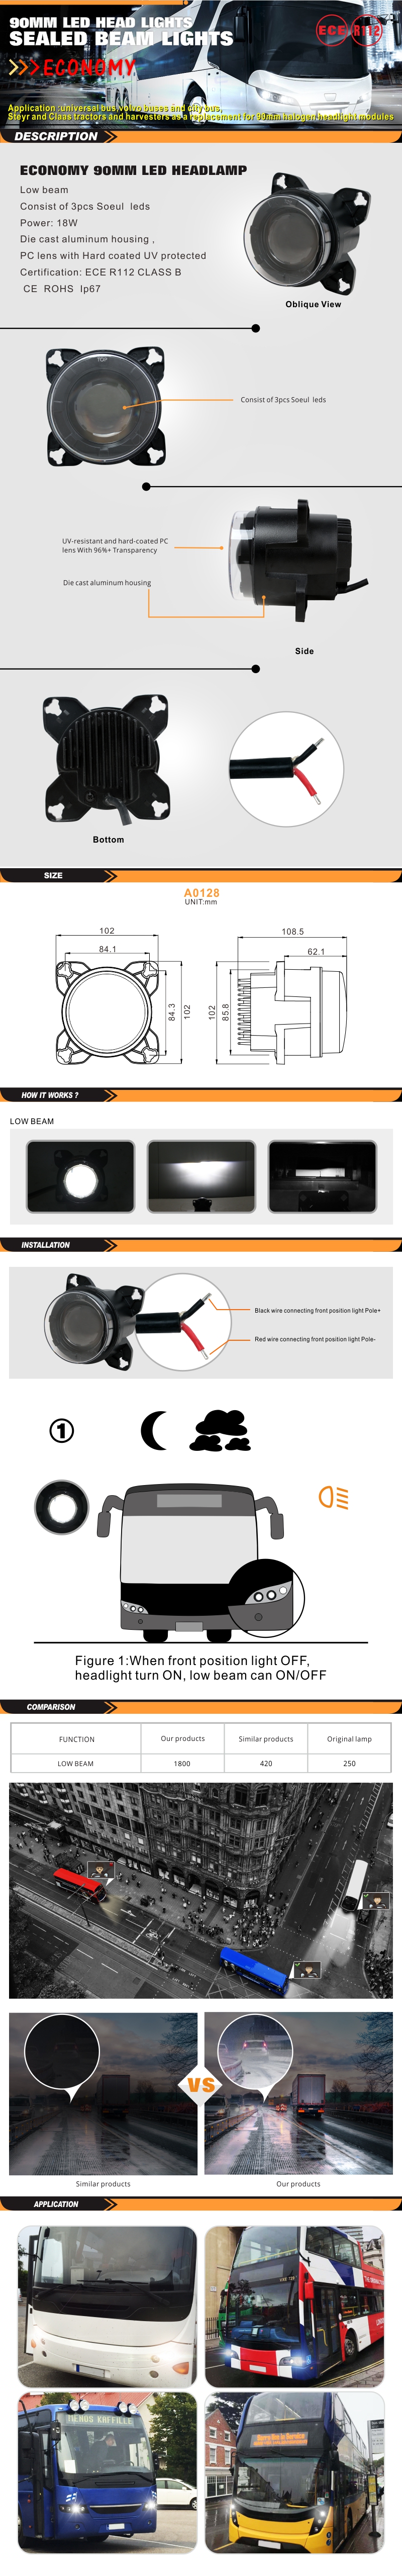 A0128-标准灯产品描述页